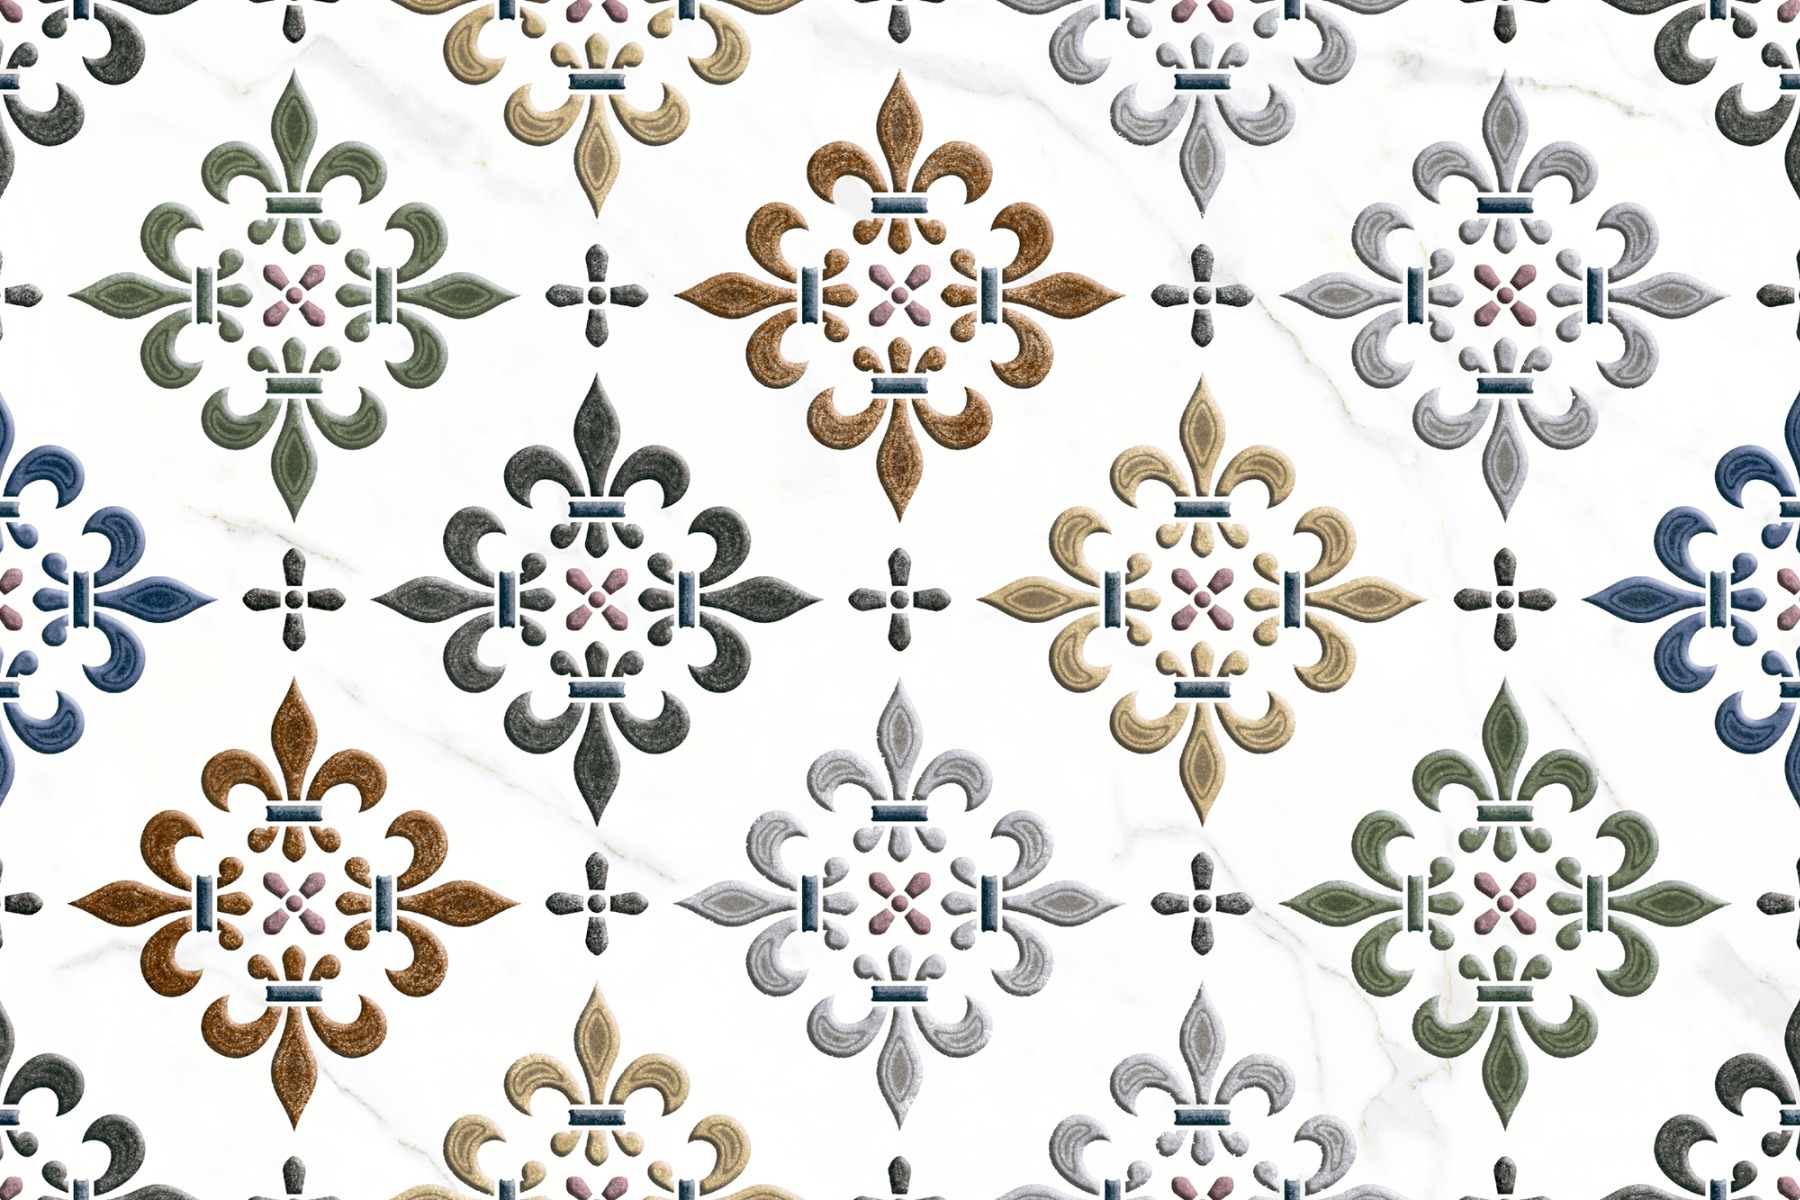 Pattern Tiles for Bathroom Tiles